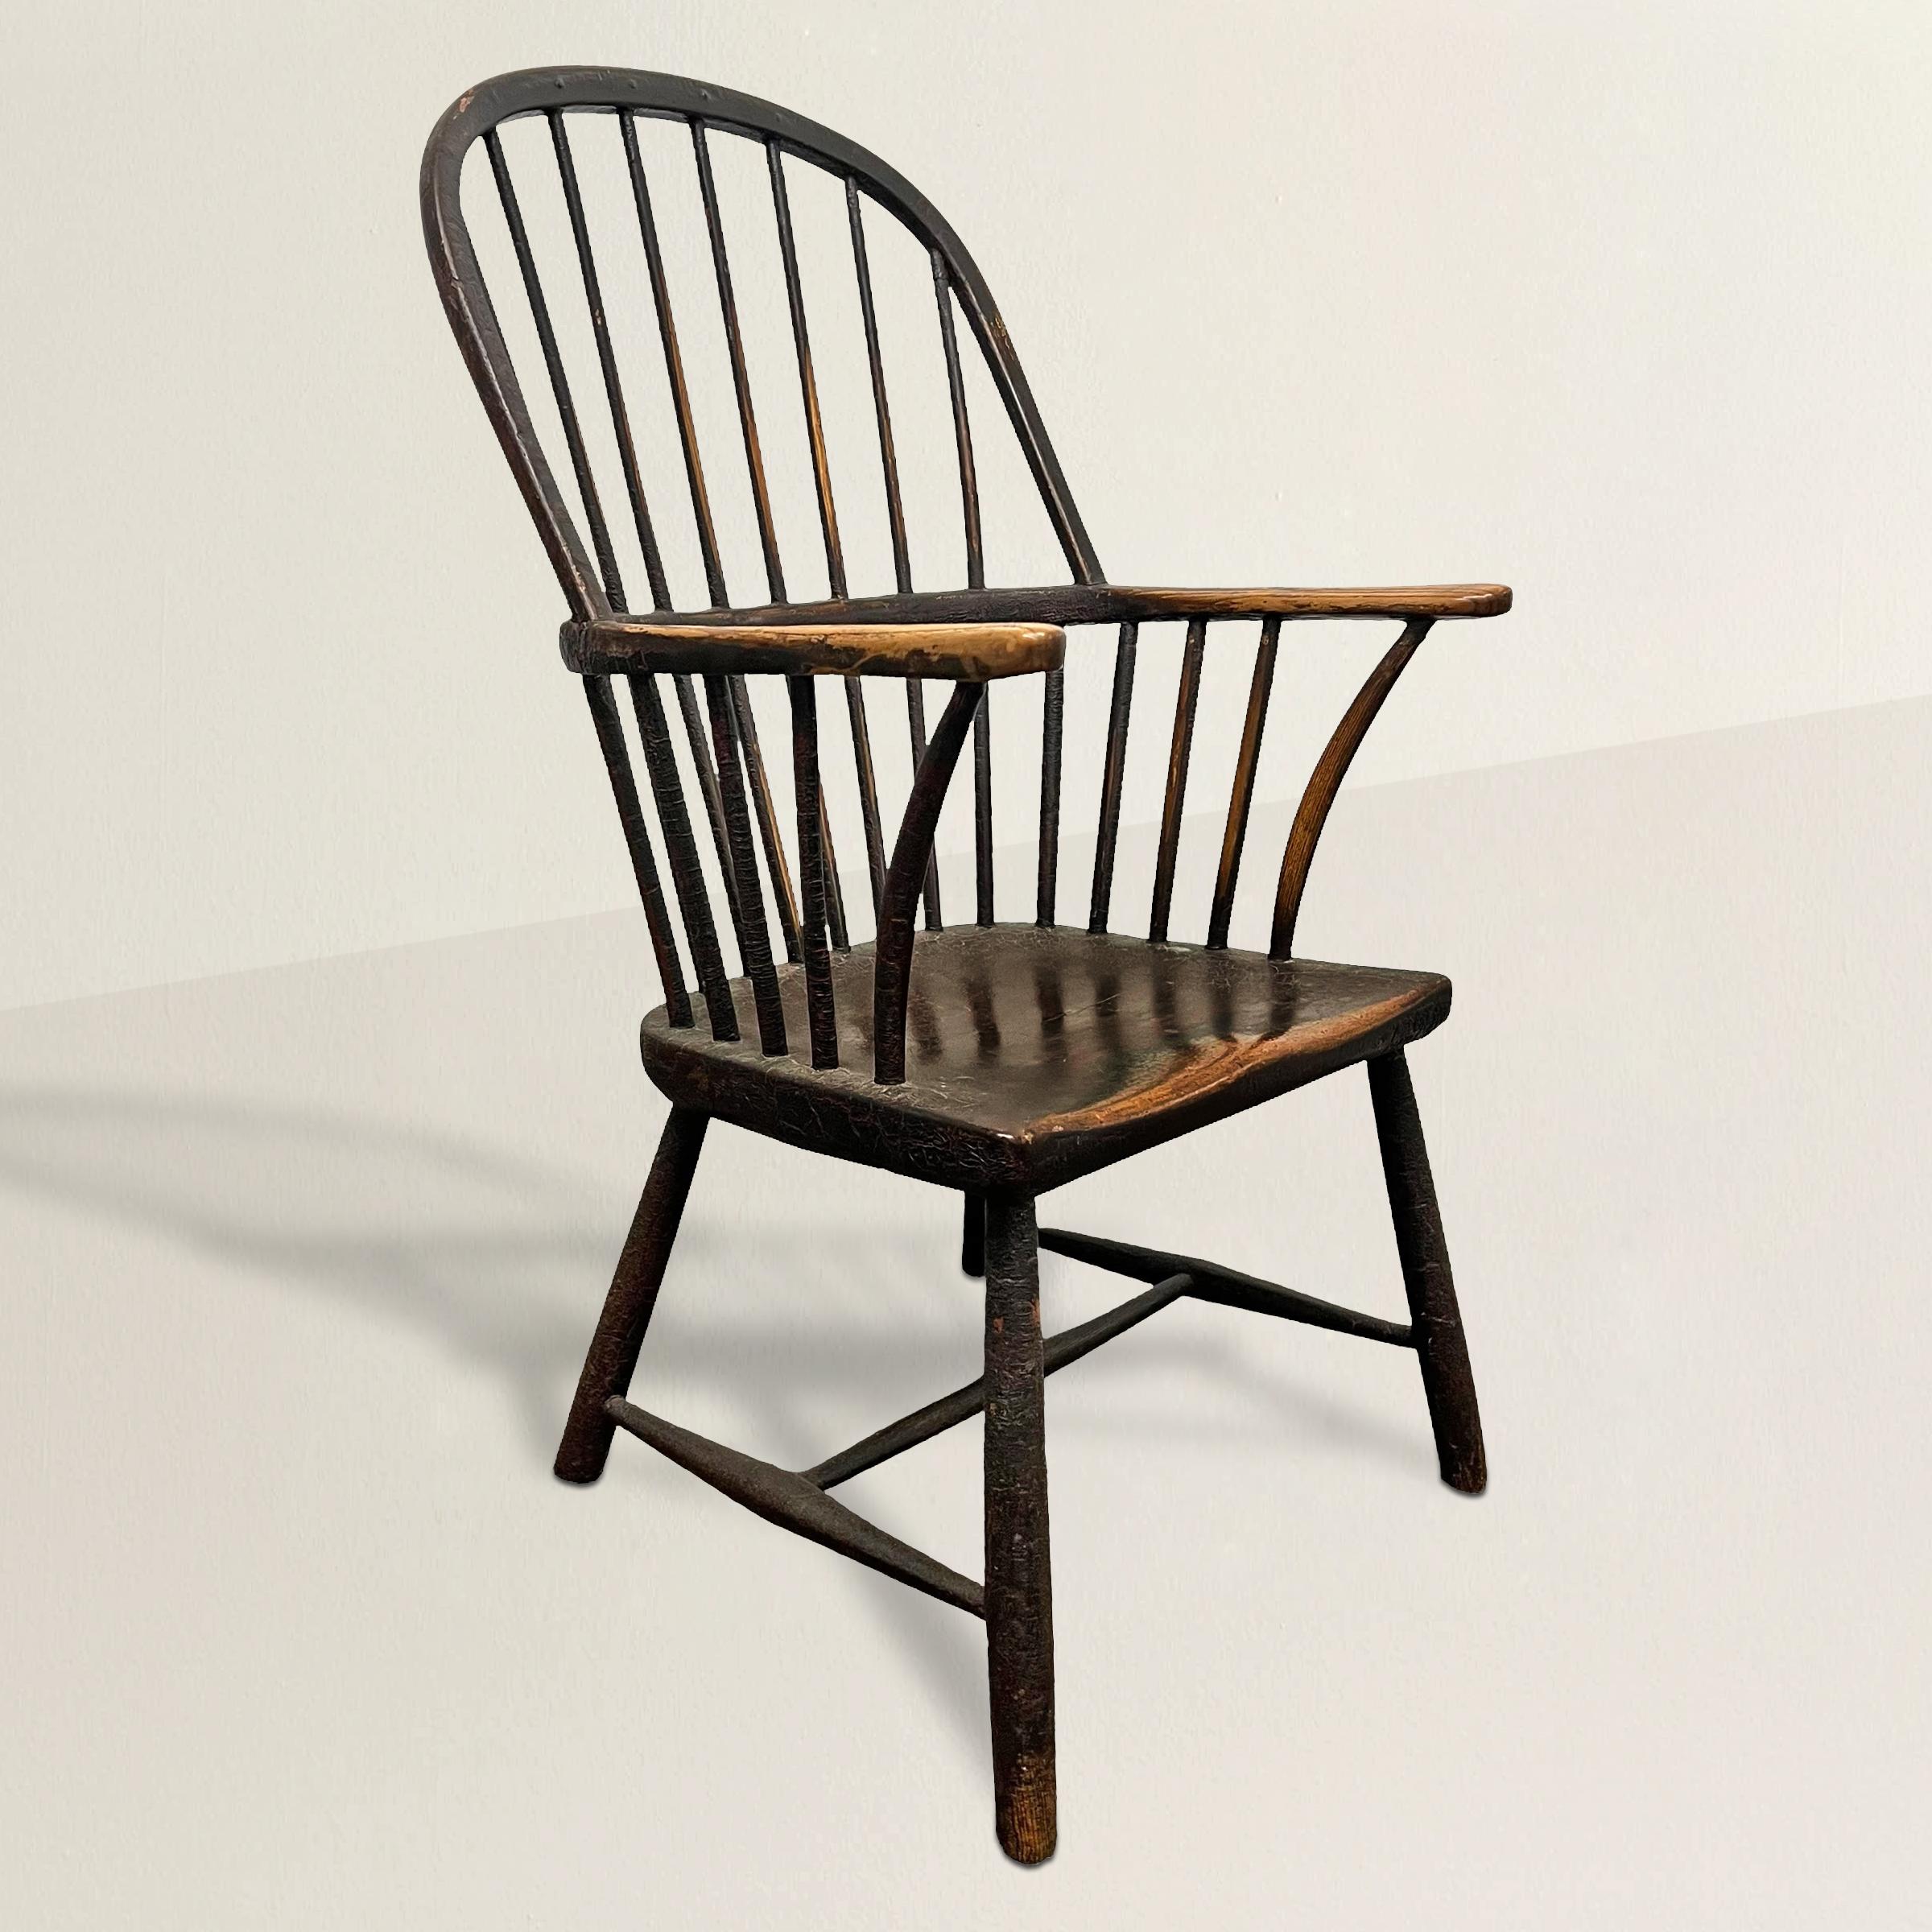 Dieser exquisite englische Windsor-Sessel aus dem 18. Jahrhundert ist ein Zeugnis für die zeitlose Handwerkskunst dieser Zeit. Die robuste, aus Ulme gefertigte Struktur ist mit einem dicken, einteiligen Sattelsitz ausgestattet, der sich anmutig